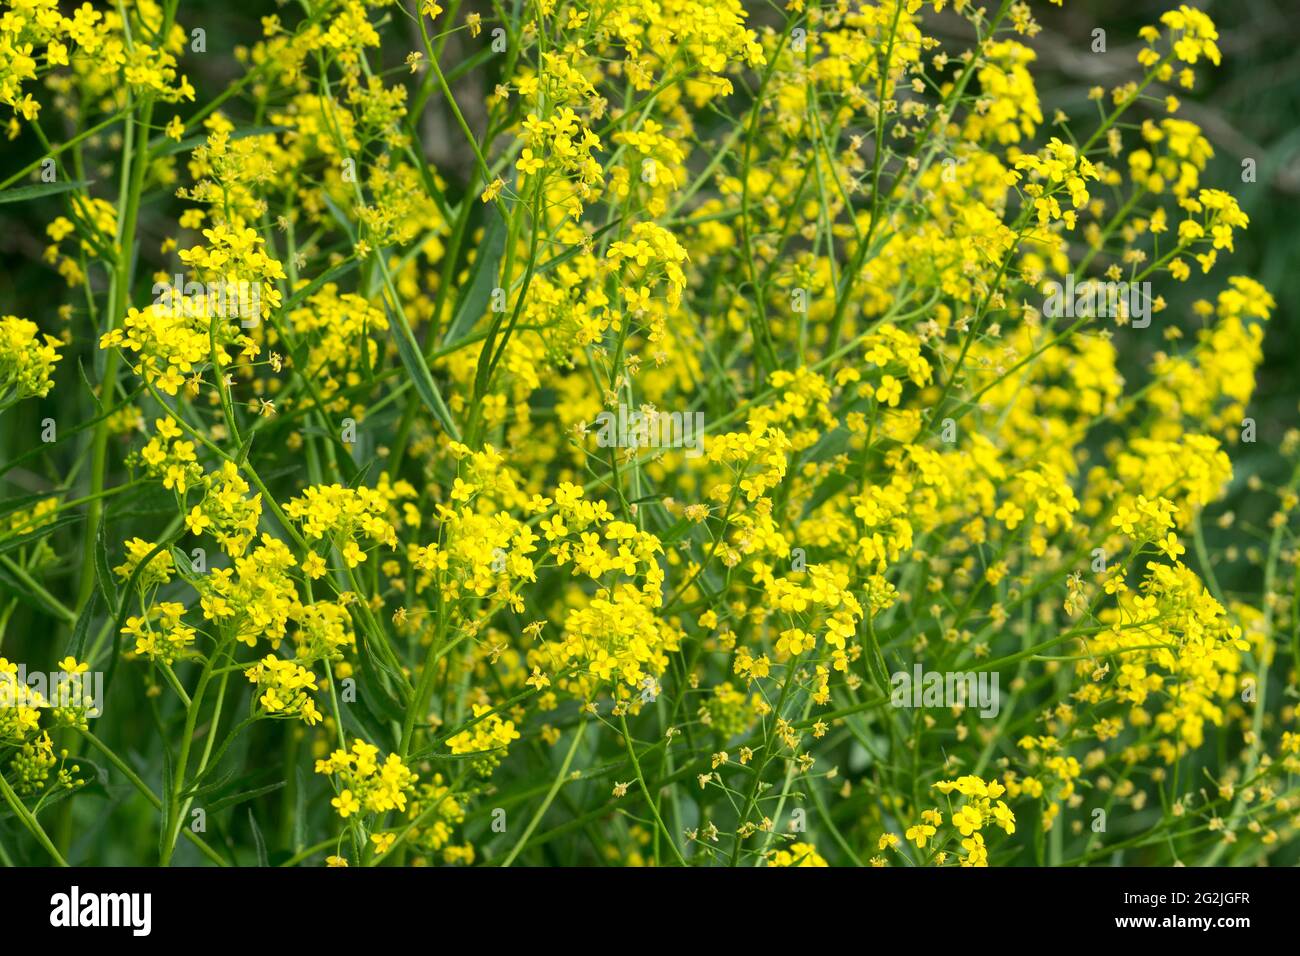 Bunias orientalis, turco wartychoux printemps fleurs jaunes gros plan sélectif foyer Banque D'Images